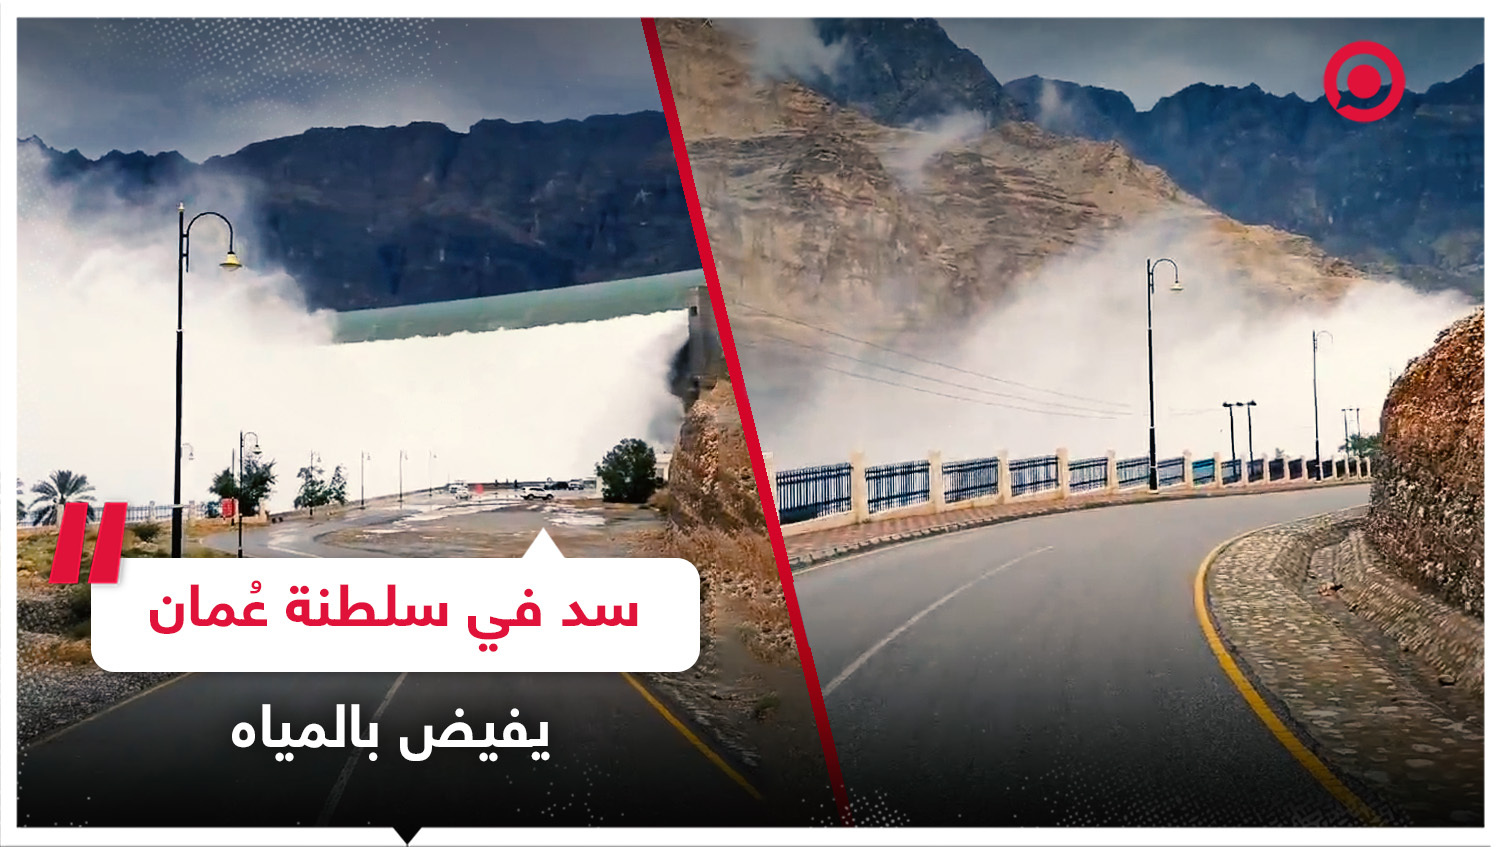 سد في سلطنة عمان يفيض بالمياه عقب العاصفة المطرية التي اجتاحت البلاد